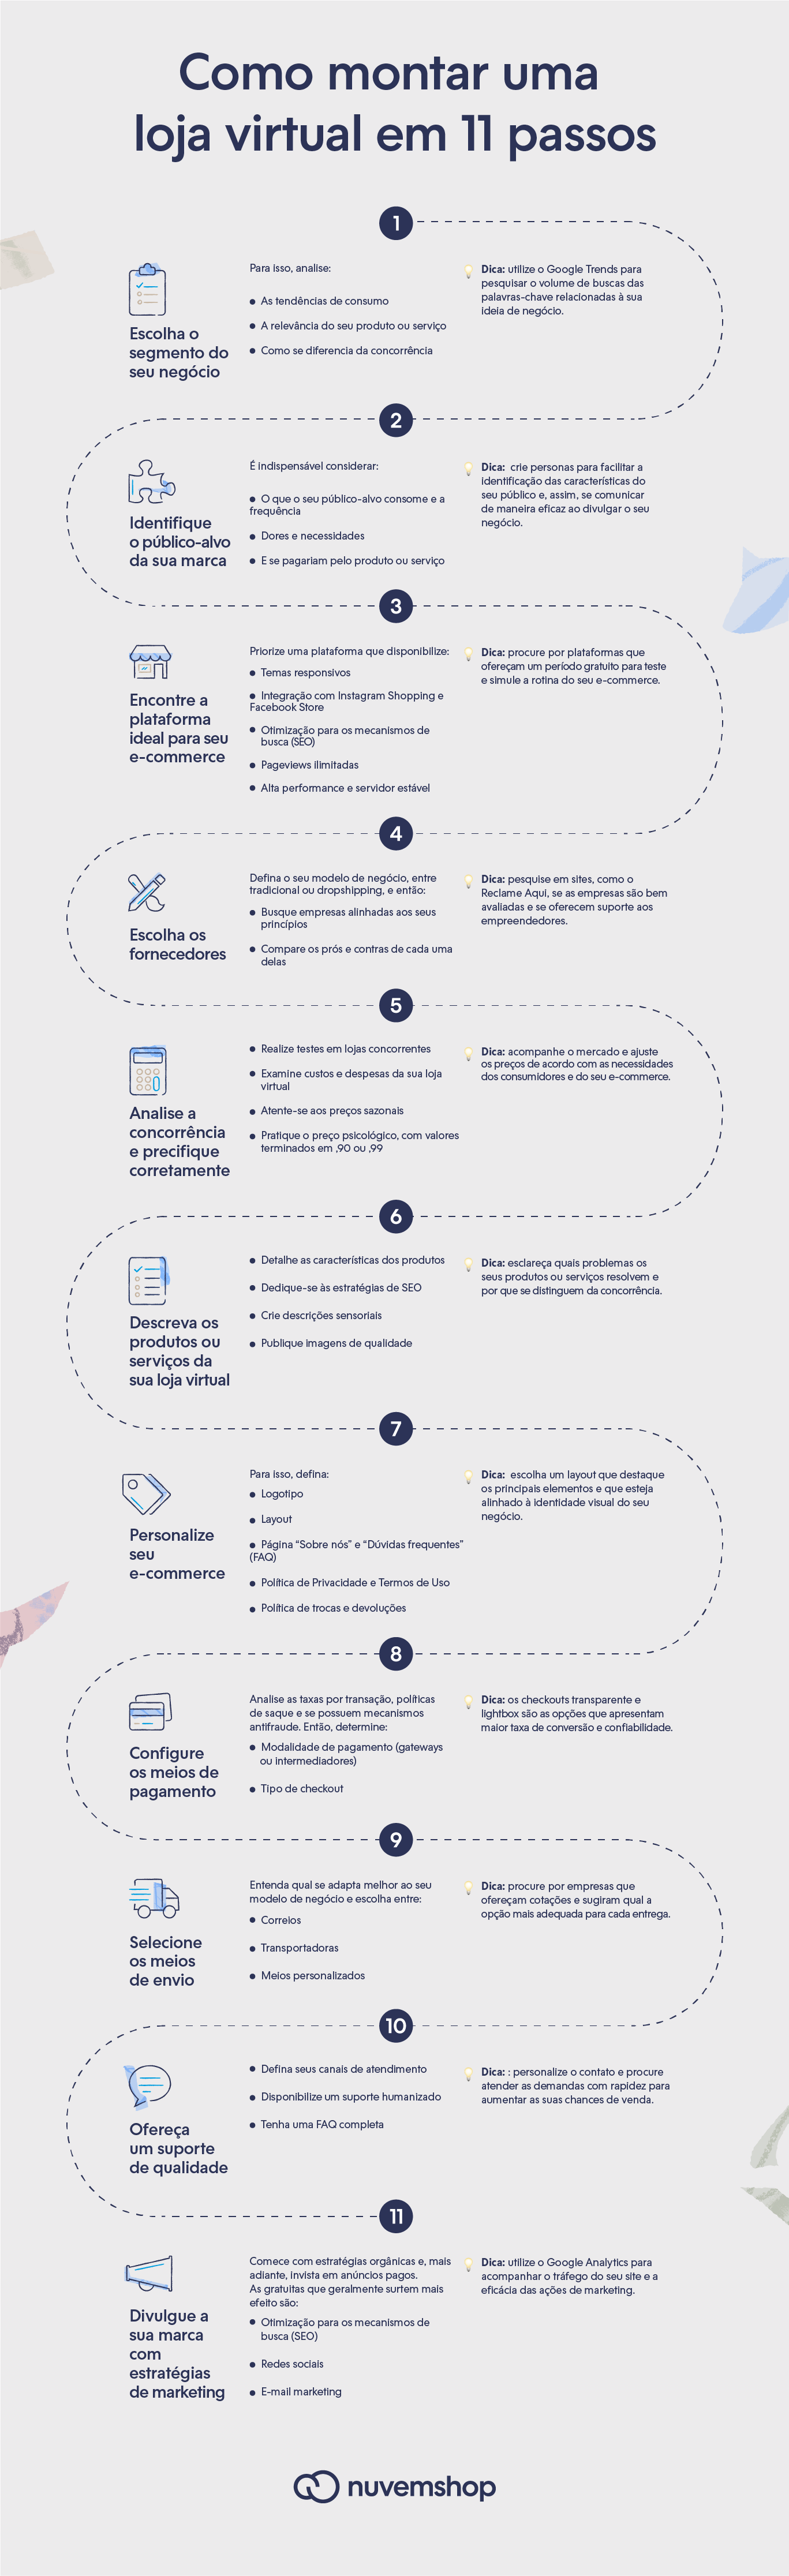 Infográfico com 11 passos para criar uma loja virtual